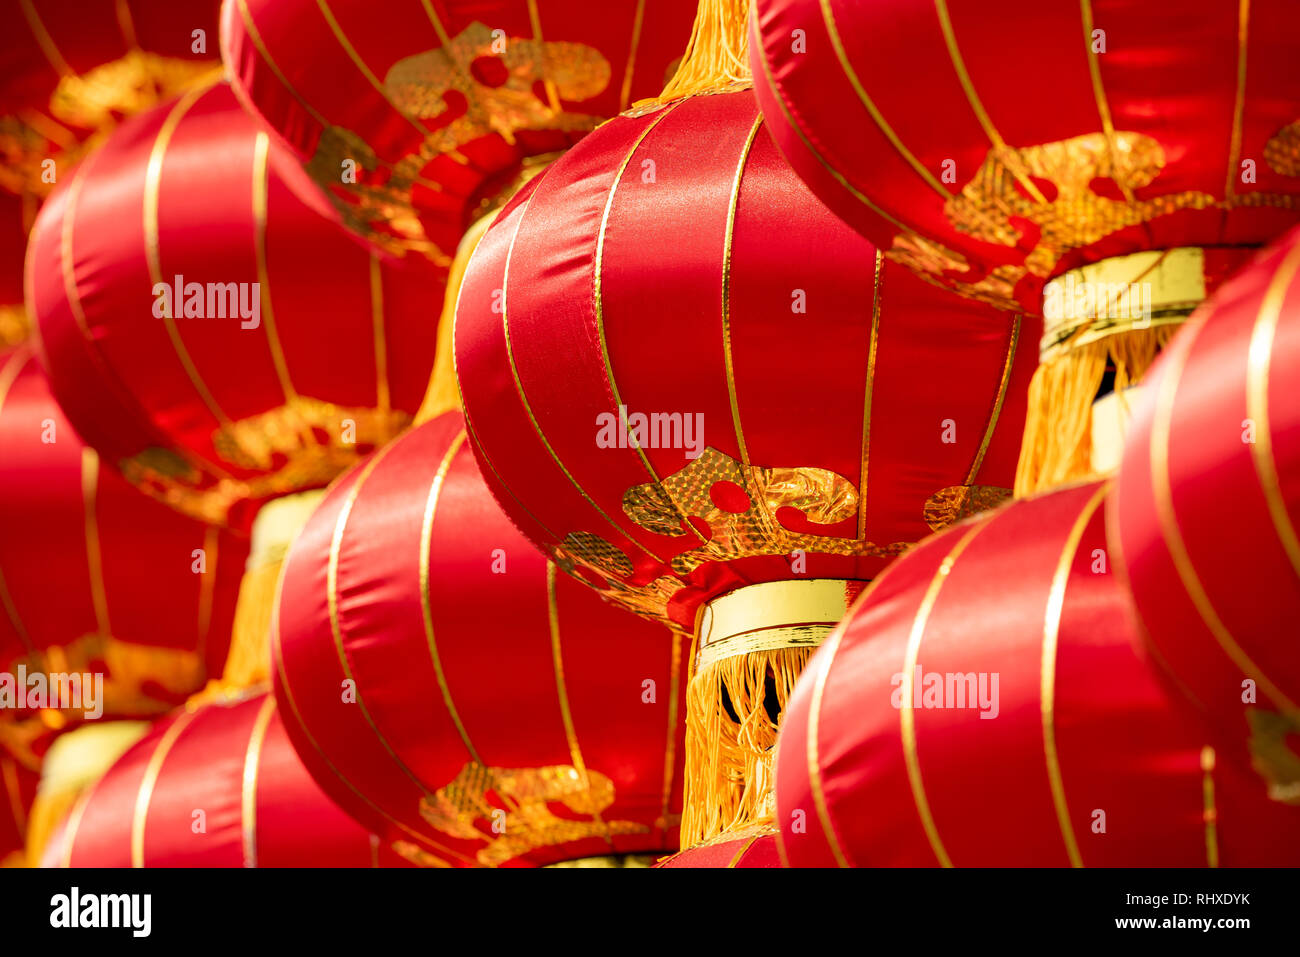 Groupe de lanternes chinoises close-up view pour le nouvel an chinois Banque D'Images